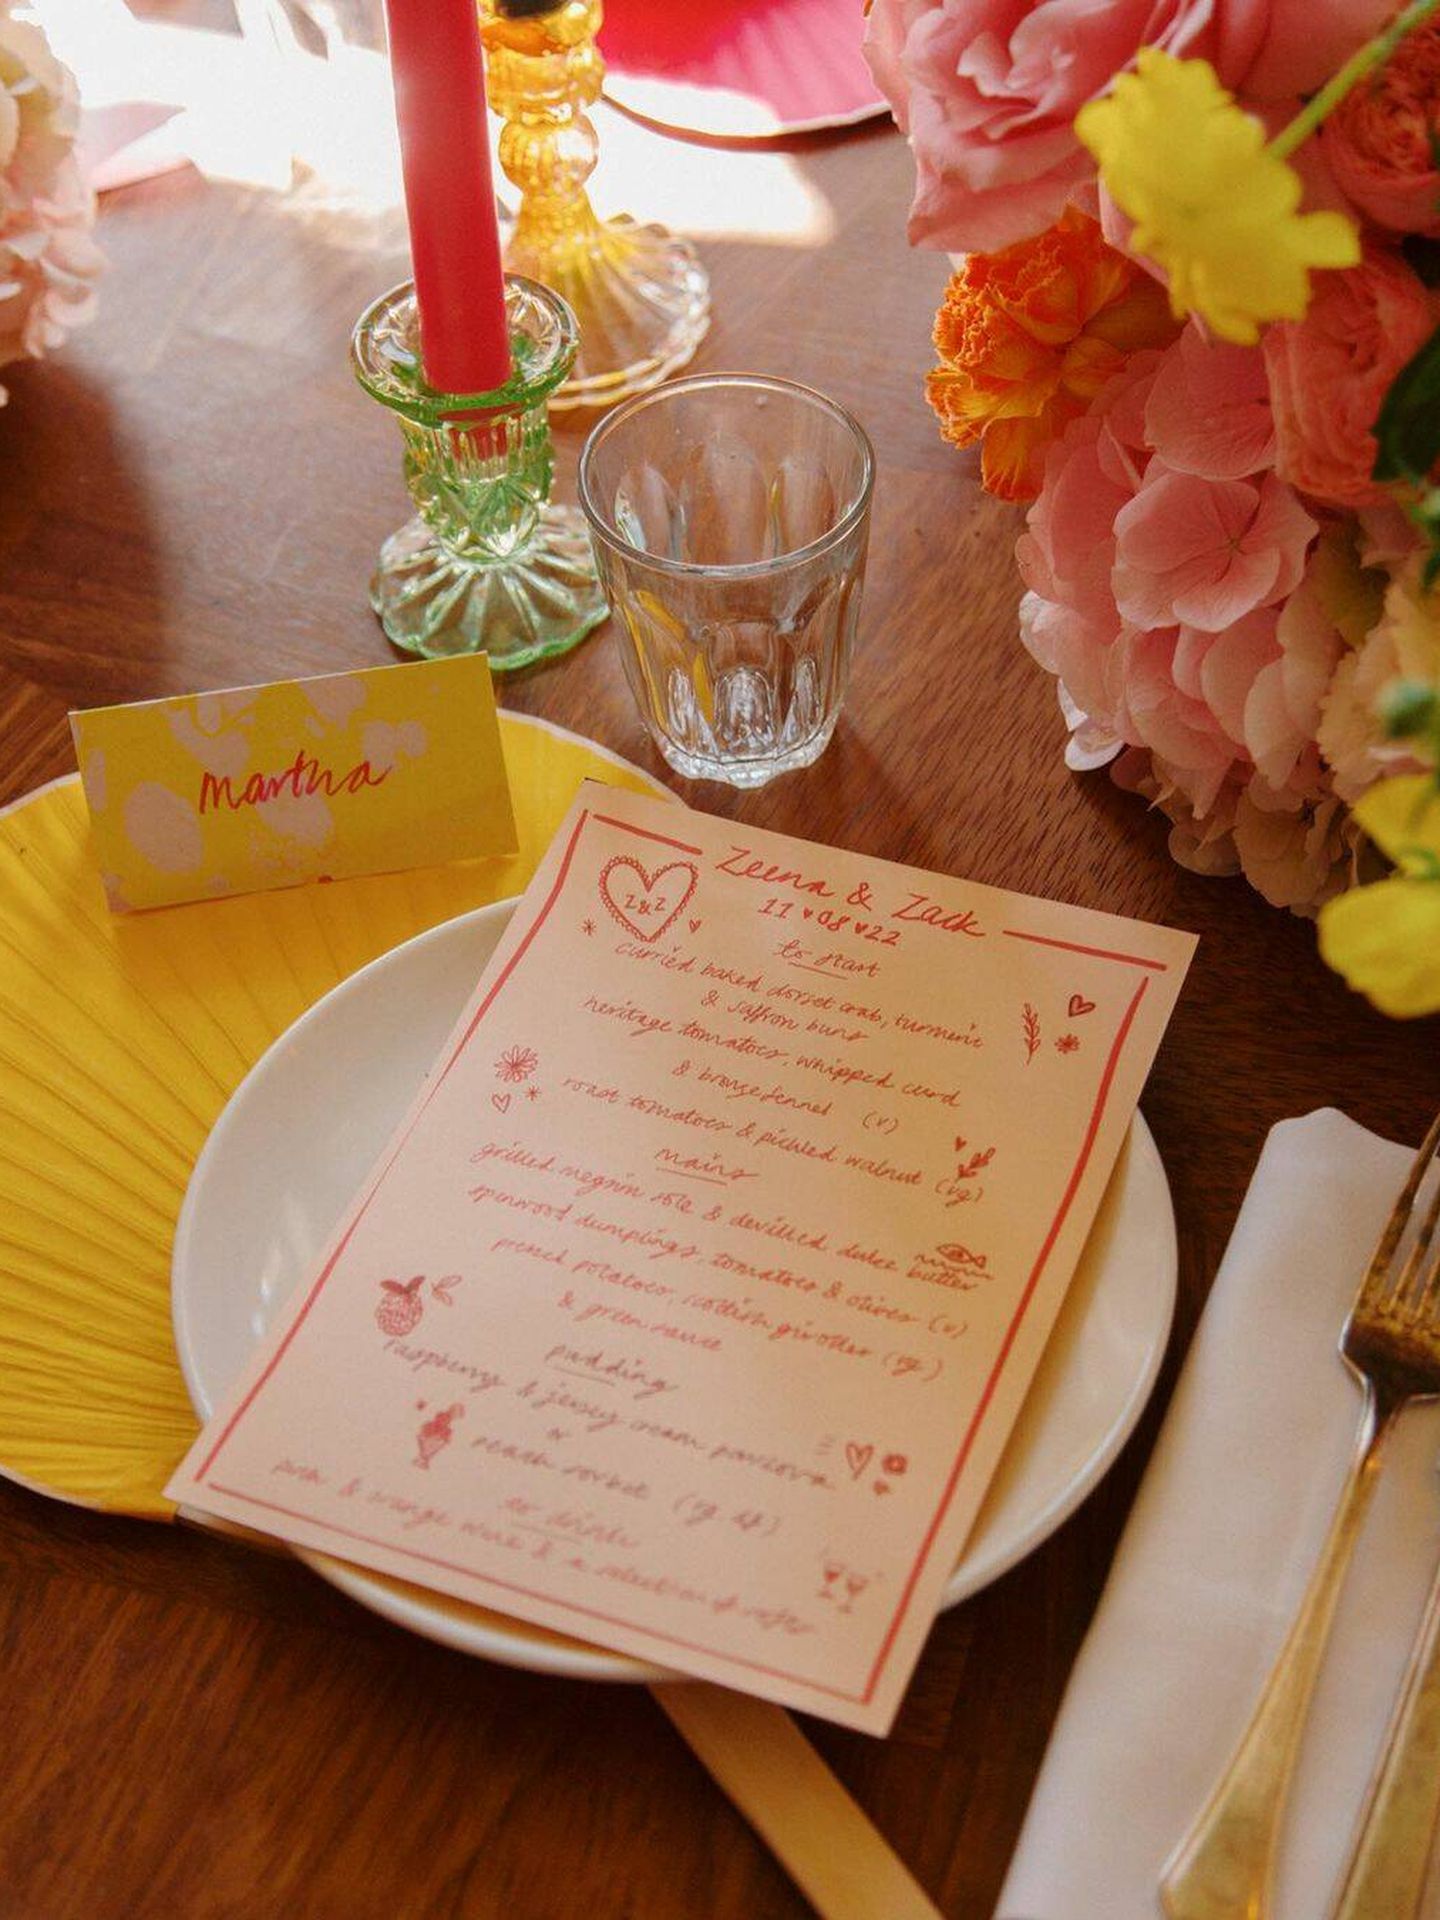 Menú de la boda y tarjetas de los invitados hechos a mano en la boda de Zeena Shah. (Instagram @heartzeena)